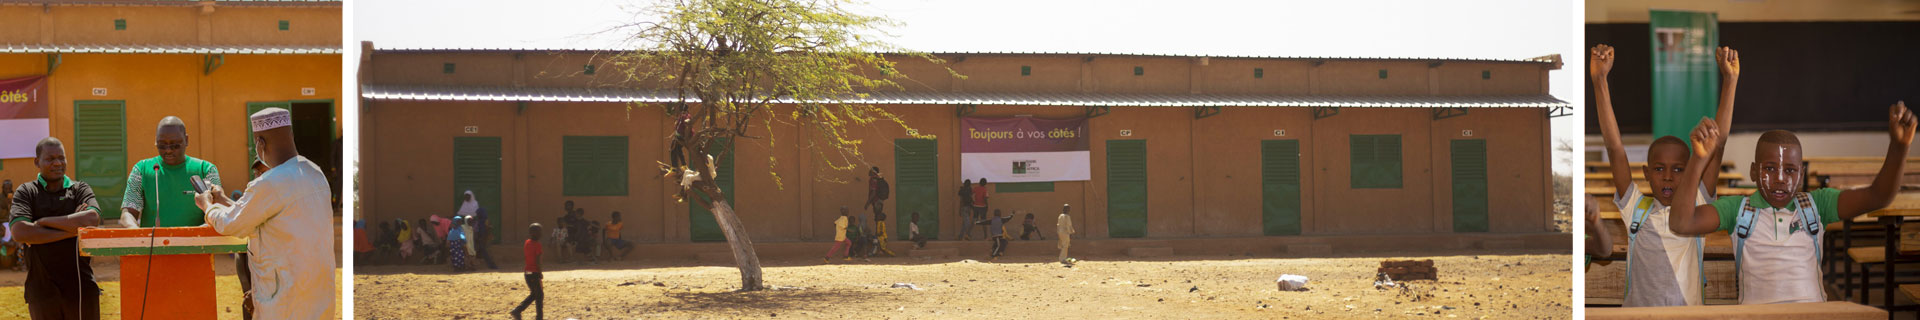 Inauguration d’une école au Niger